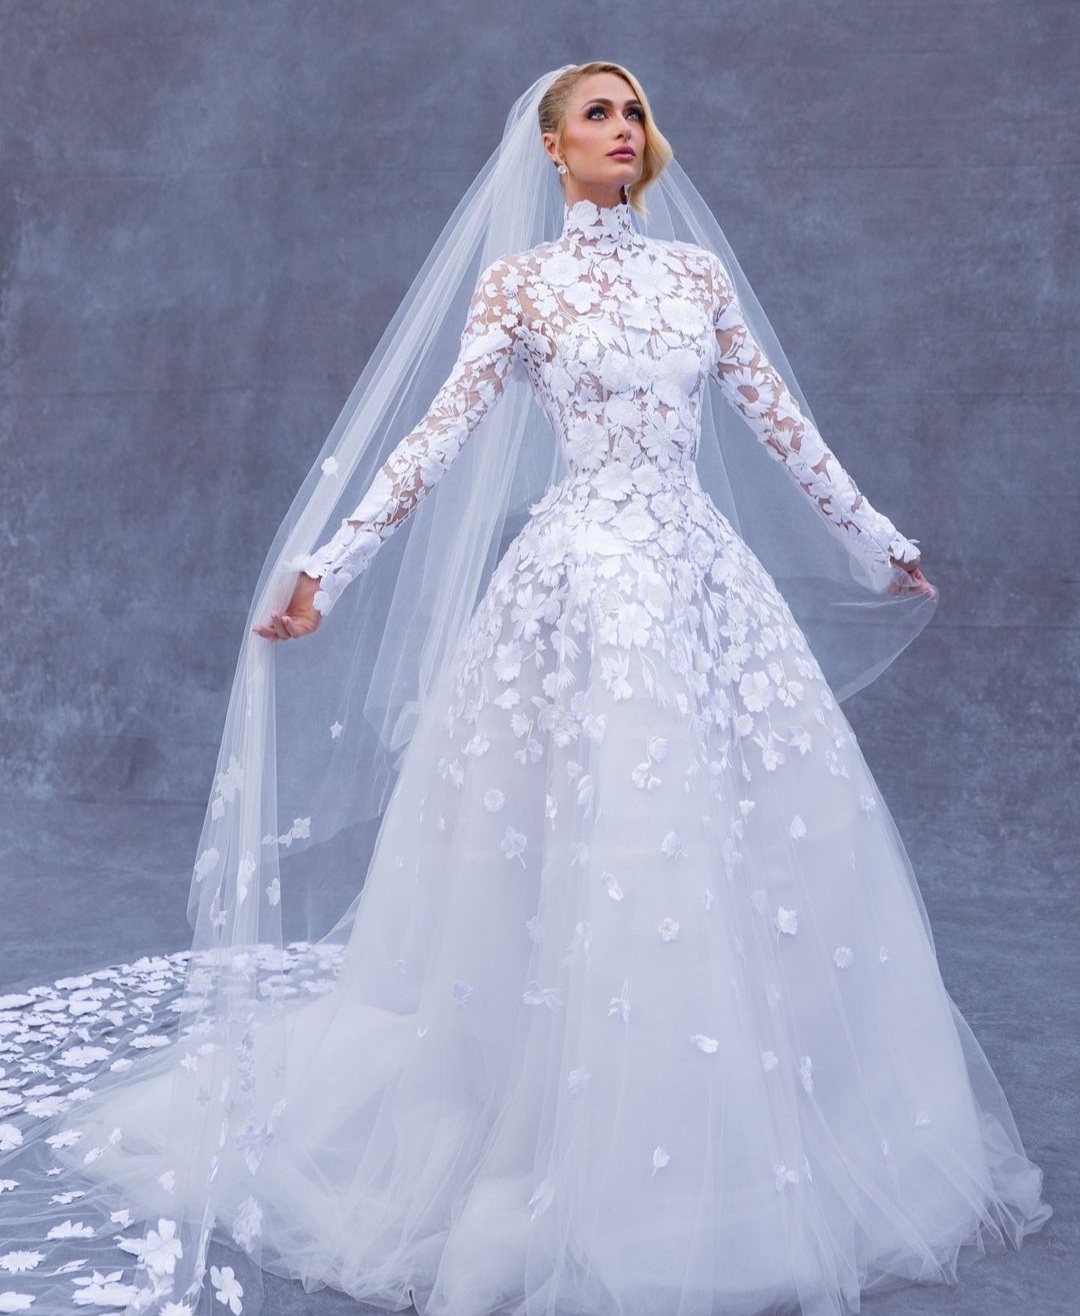 L'abito da sposa di Paris Hilton realizzato da otto sarte del team di Oscar de la Renta.